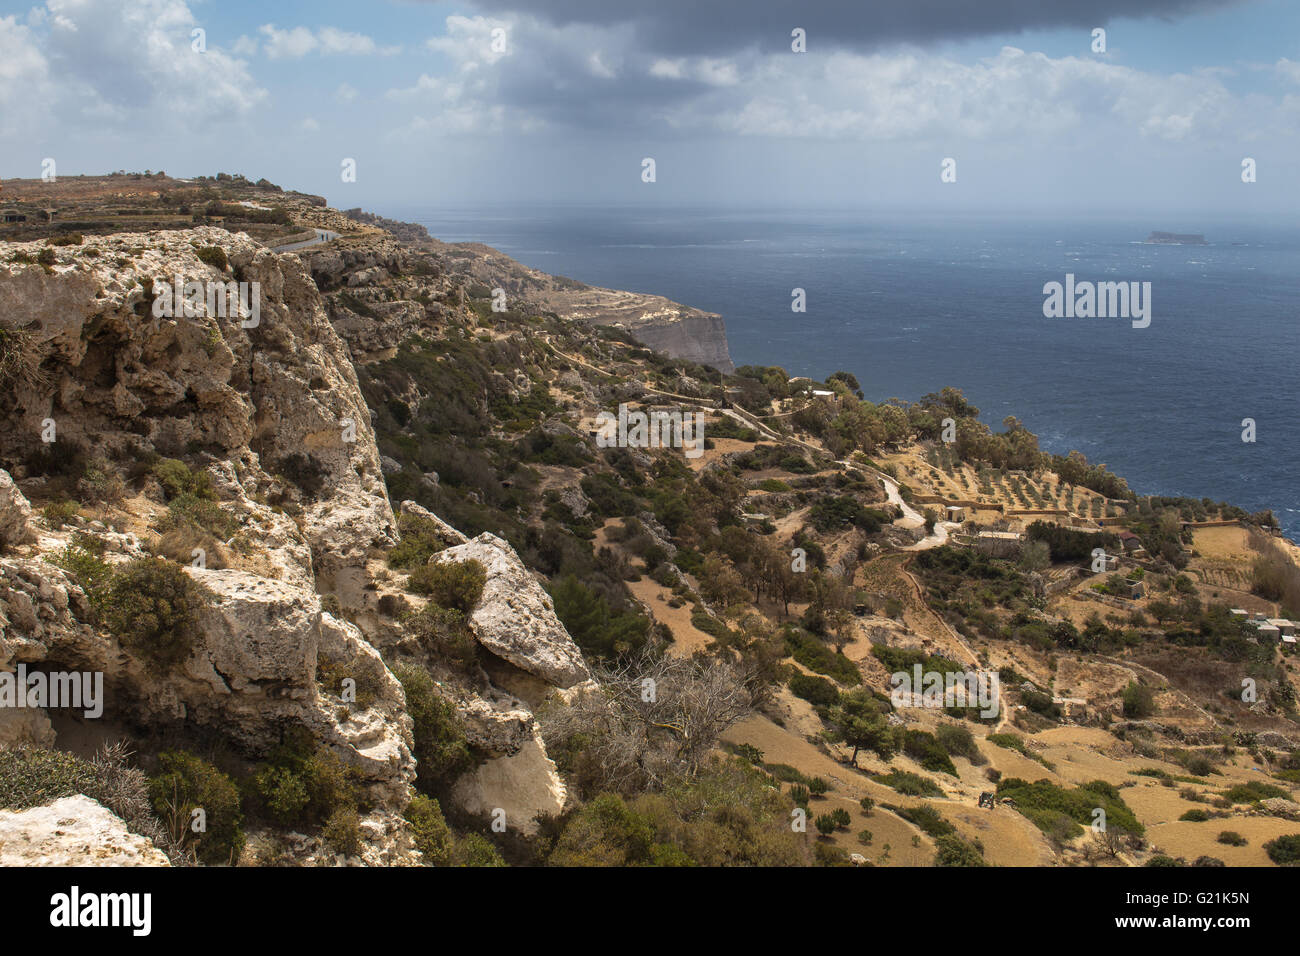 Los acantilados de Dingli, uno de los más bellos lugares de la costa de la isla de Malta. El agua del mar Mediterráneo. Cielo nublado Foto de stock